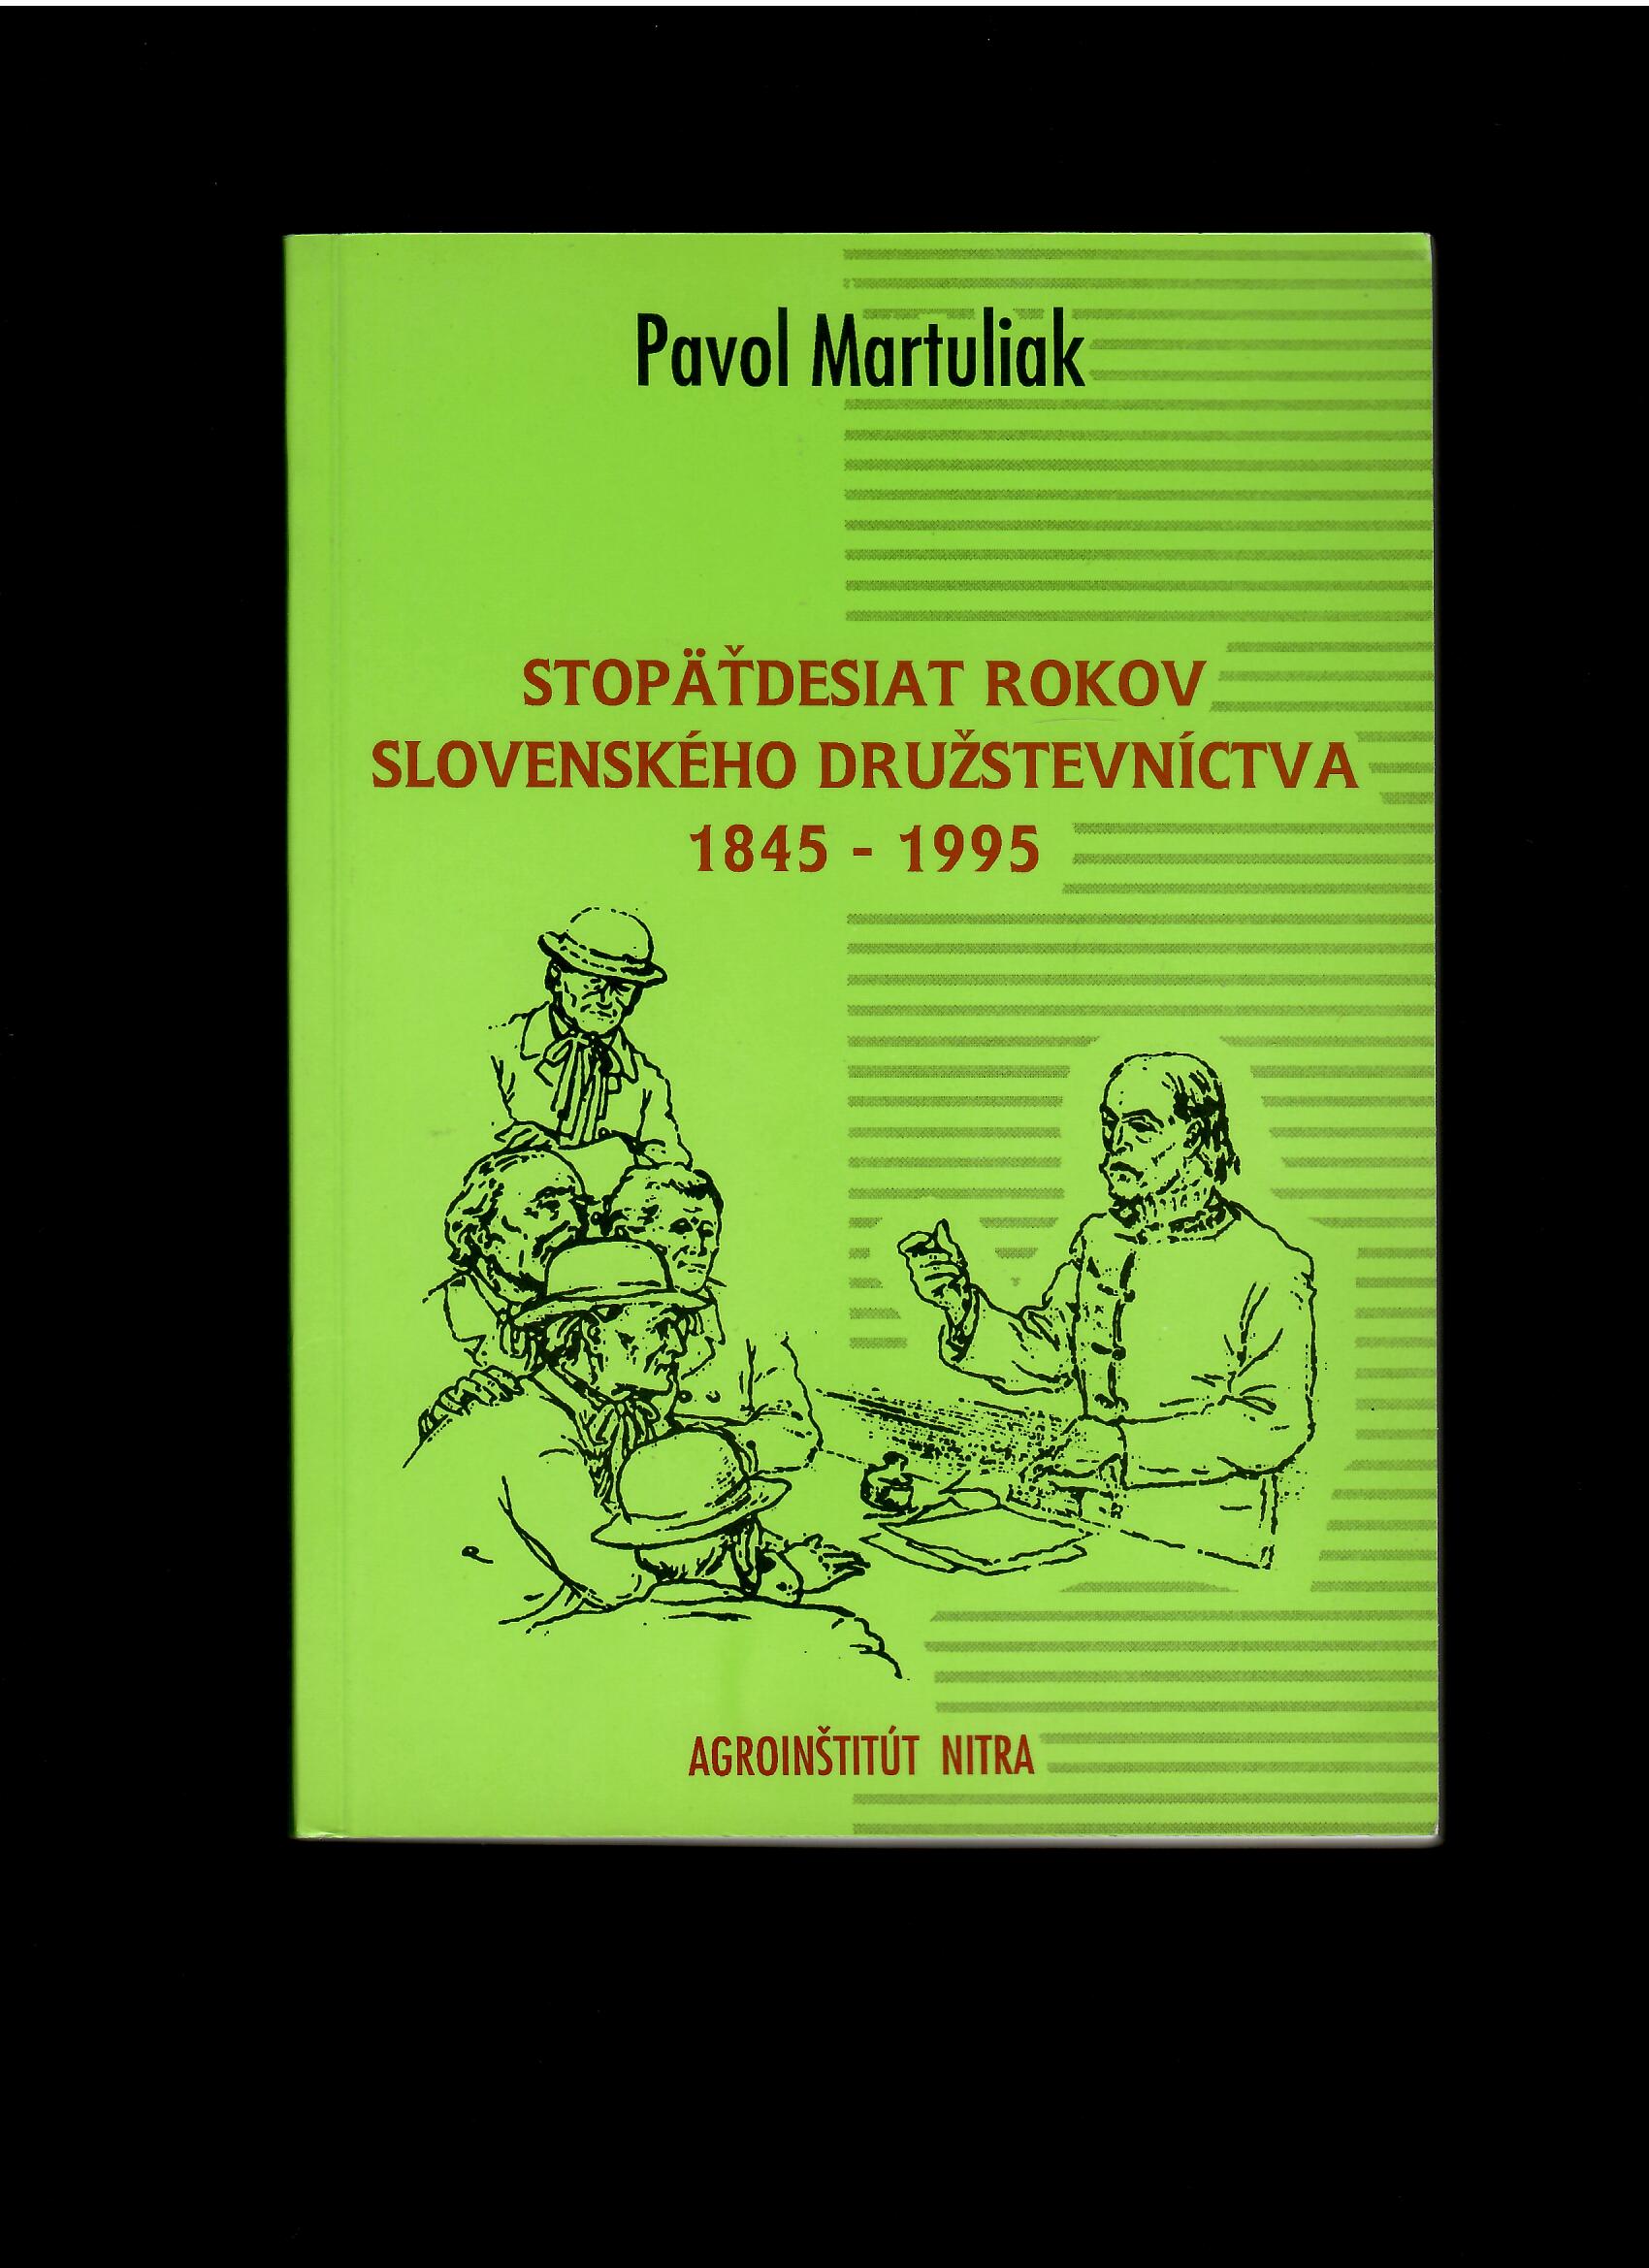 Pavol Martuliak: Stopäťdesiat rokov slovenského družstevníctva 1845-1995